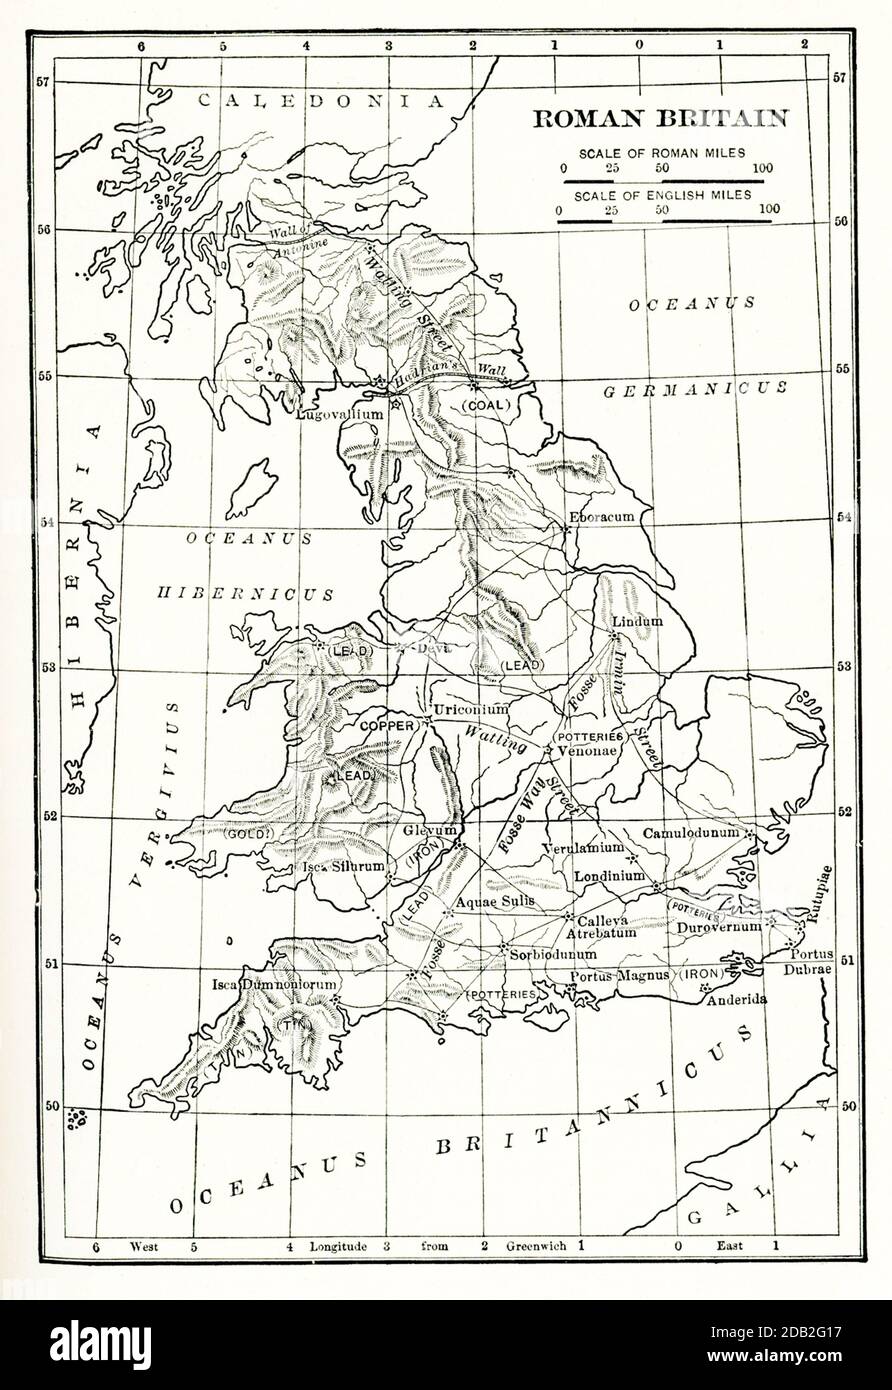 Karte Für Das Römische Großbritannien. Die Provinz Britannien (Britannia) war das Gebiet der Insel Großbritannien, die von 43 bis 410 n. Chr. vom Römischen Reich regiert wurde. Sie umfasste fast ganz England und Wales und kurzzeitig auch das südliche Schottland. Stockfoto